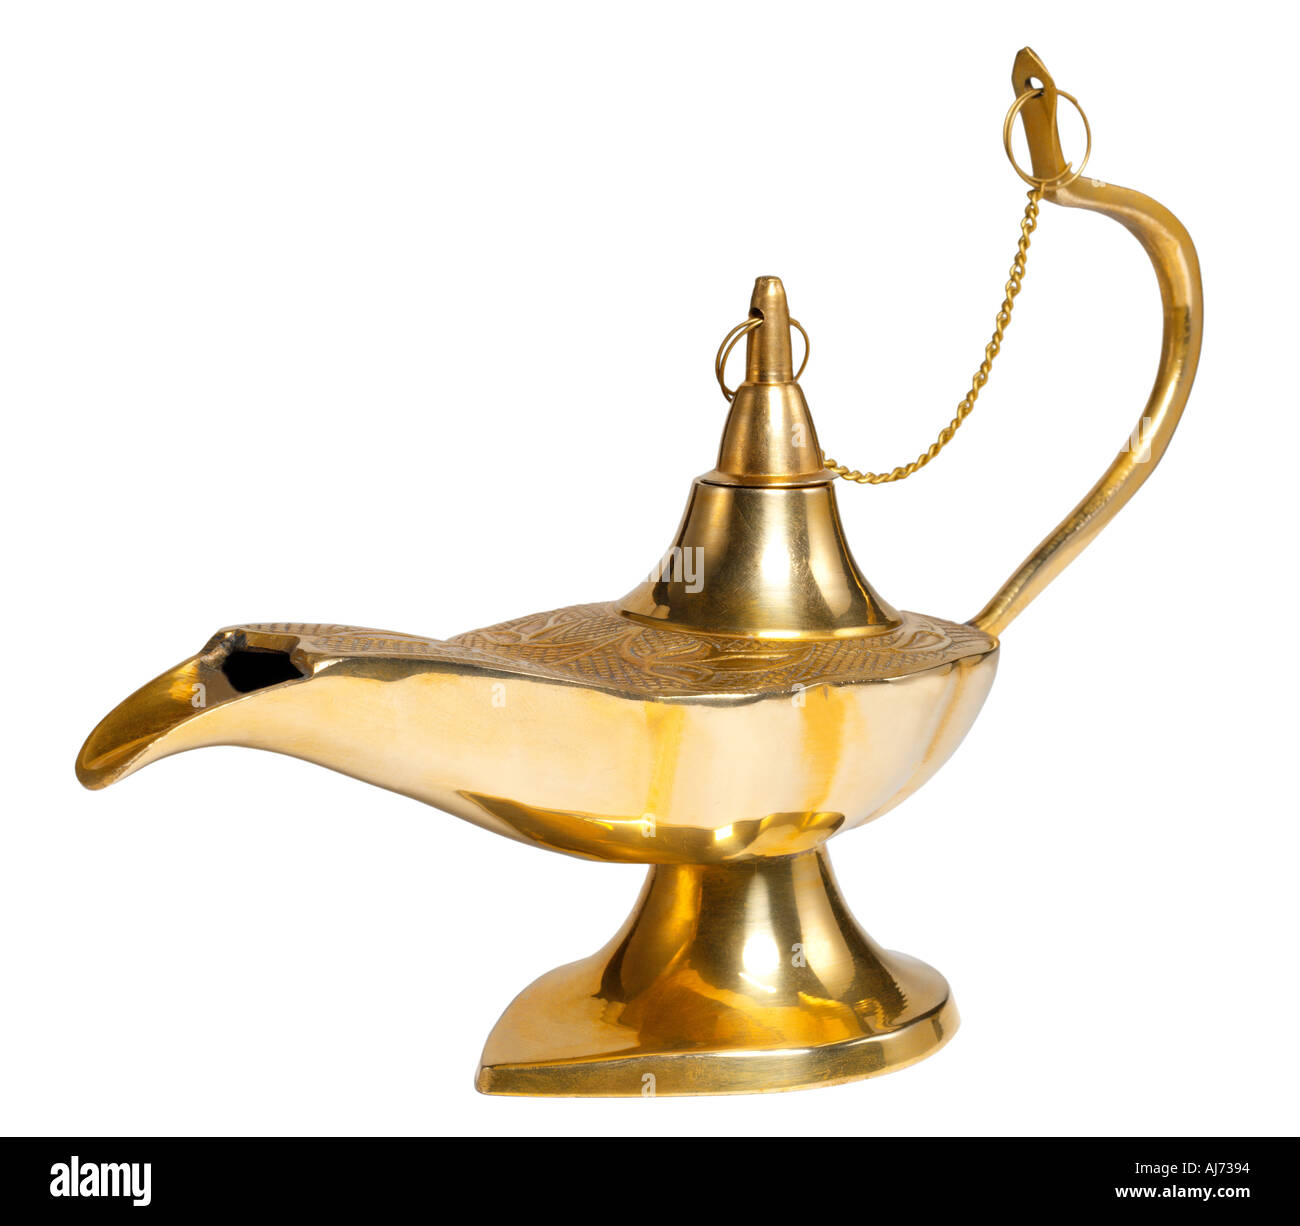 Lanterne en laiton laiton Genie concept conceptuel magic lampe lampe à huile magique conte Aladdin Banque D'Images